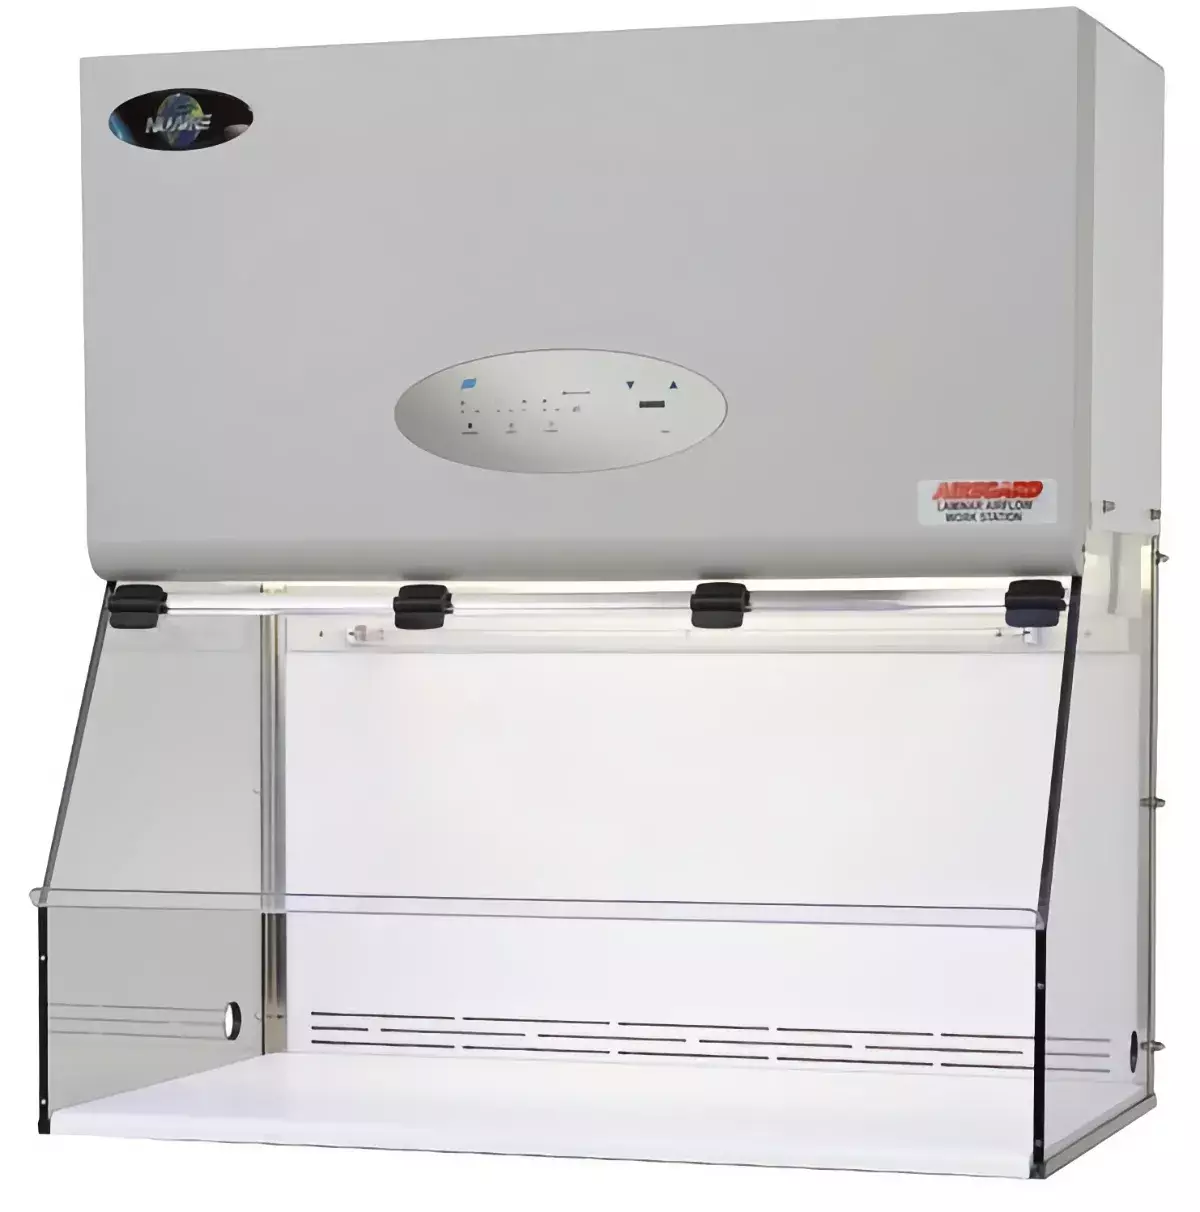 Ламинарный шкаф, защита продукта, вертикальный поток, AireGard NU-126-300 E, ширина рабочей поверхности 73 см